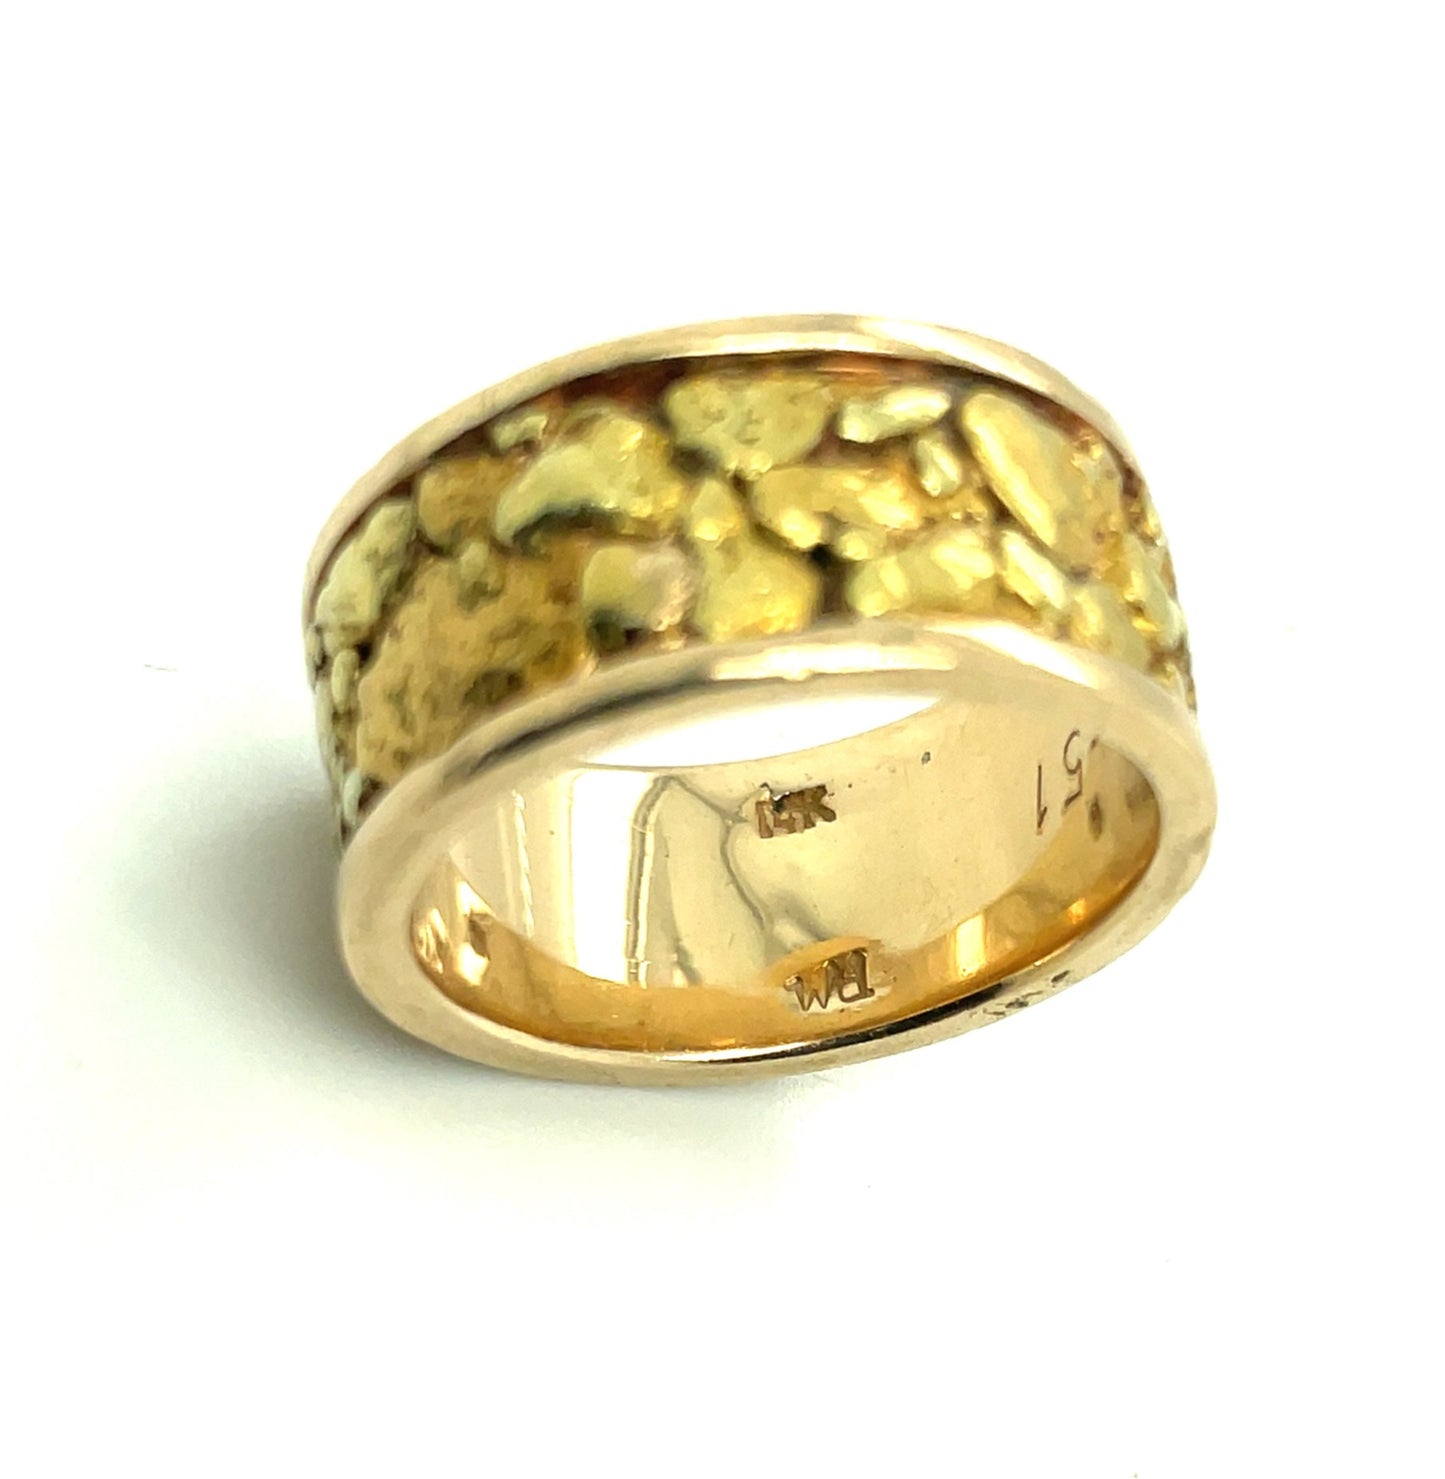 Natural Alaskan Gold Nugget 14k Gold Band Ring 16.1 Grams Size 9.5